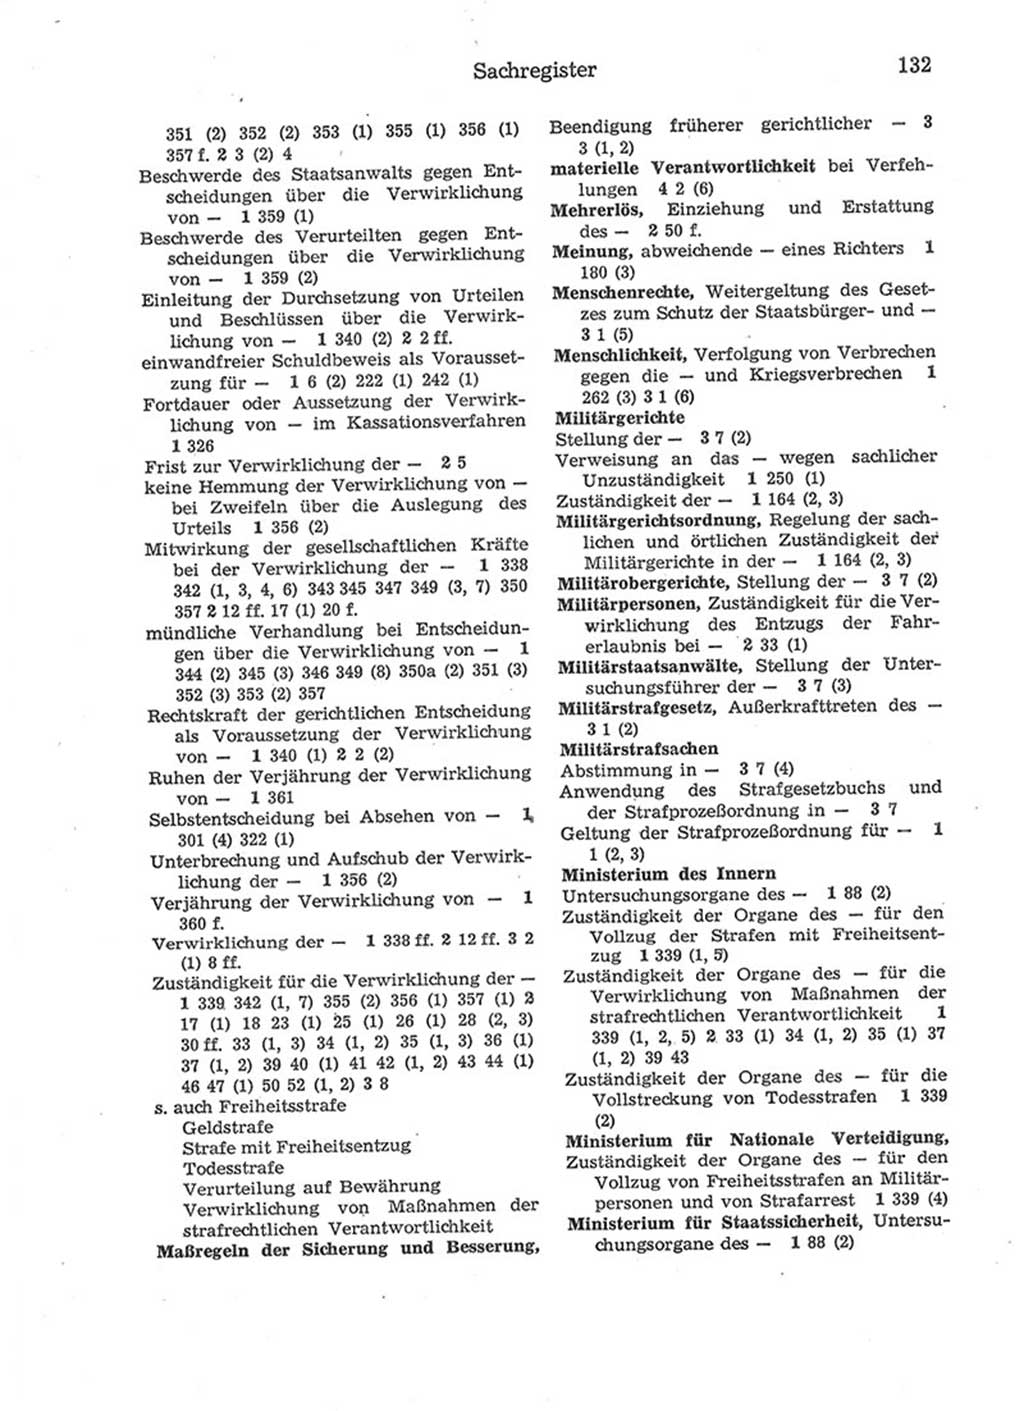 Strafprozeßordnung (StPO) der Deutschen Demokratischen Republik (DDR) 1975, Seite 132 (StPO DDR 1974, S. 132)